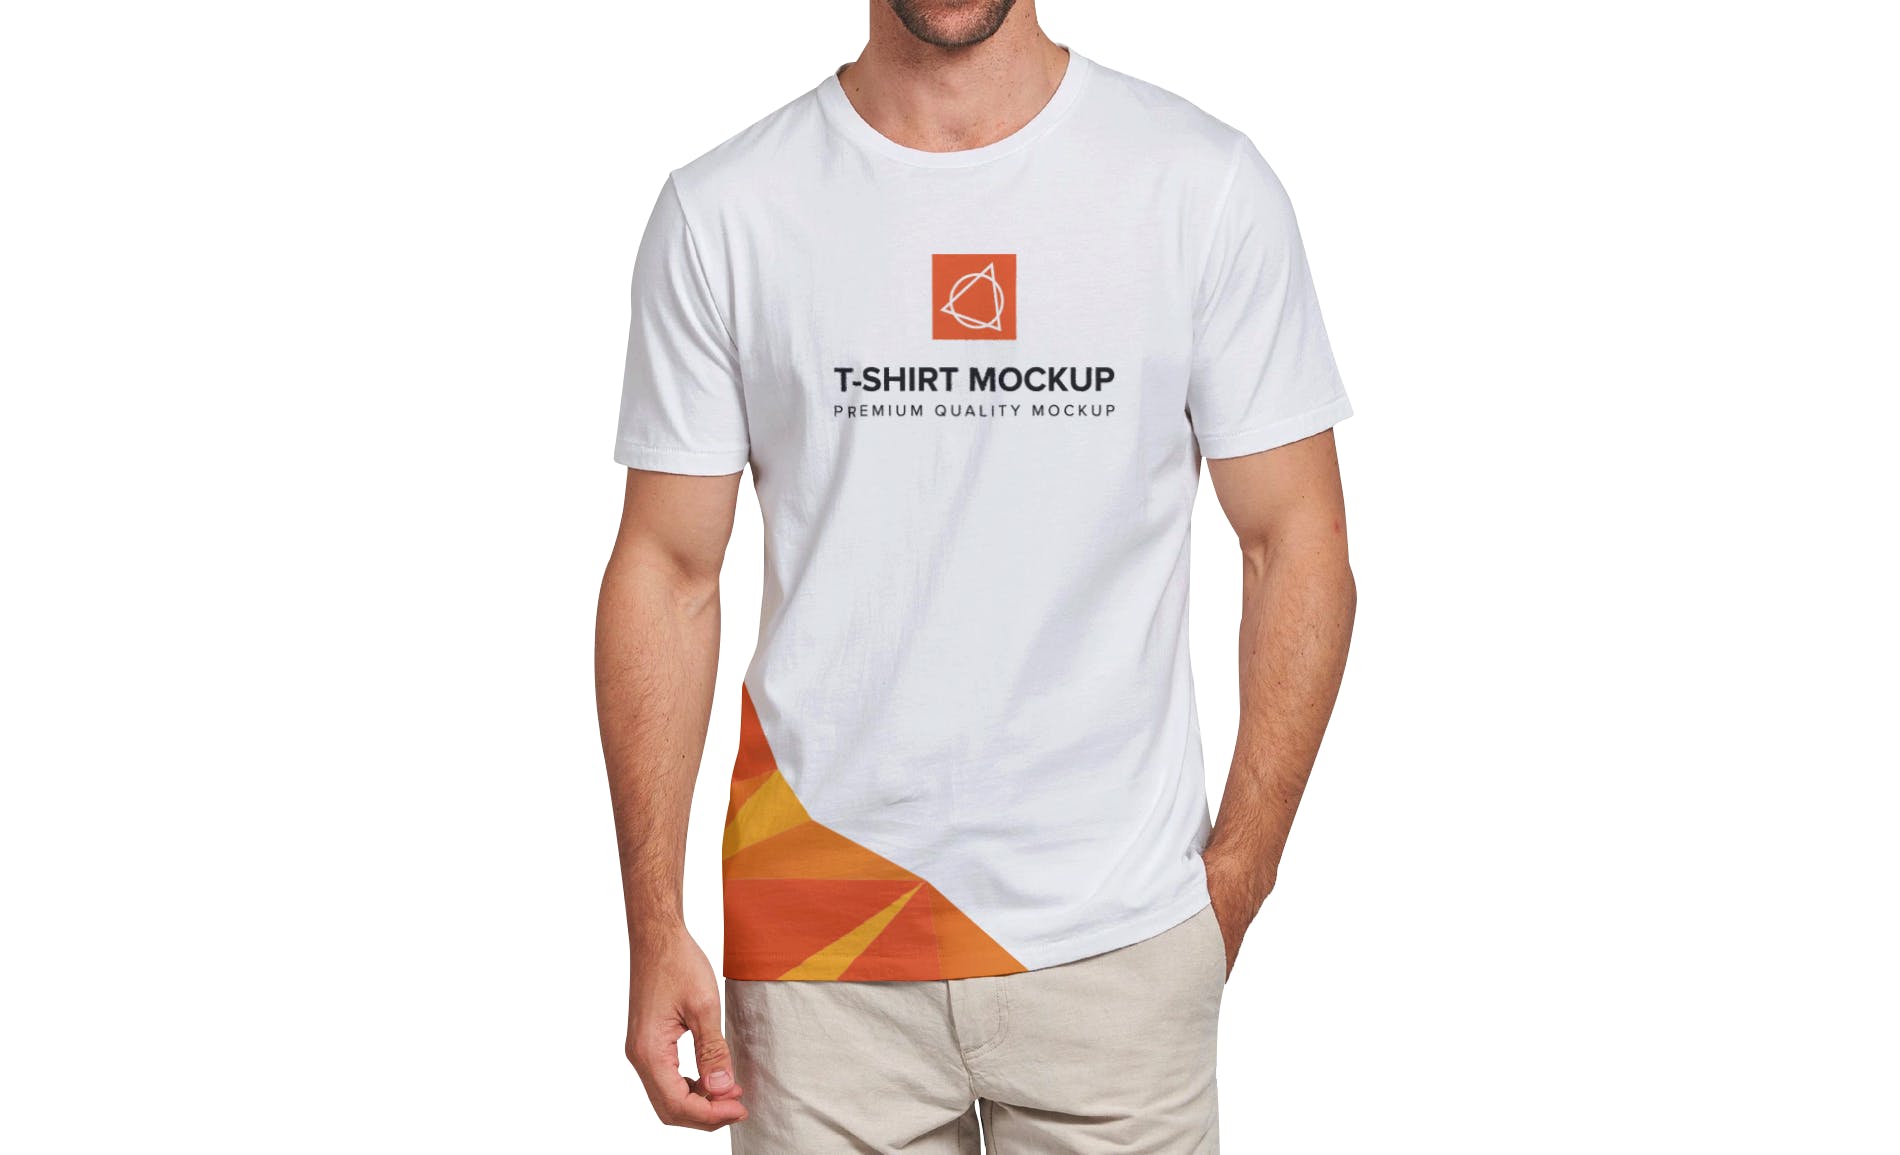 男士T恤印花设计效果图样机蚂蚁素材精选v03 T-shirt Mockup Vol 03插图(4)